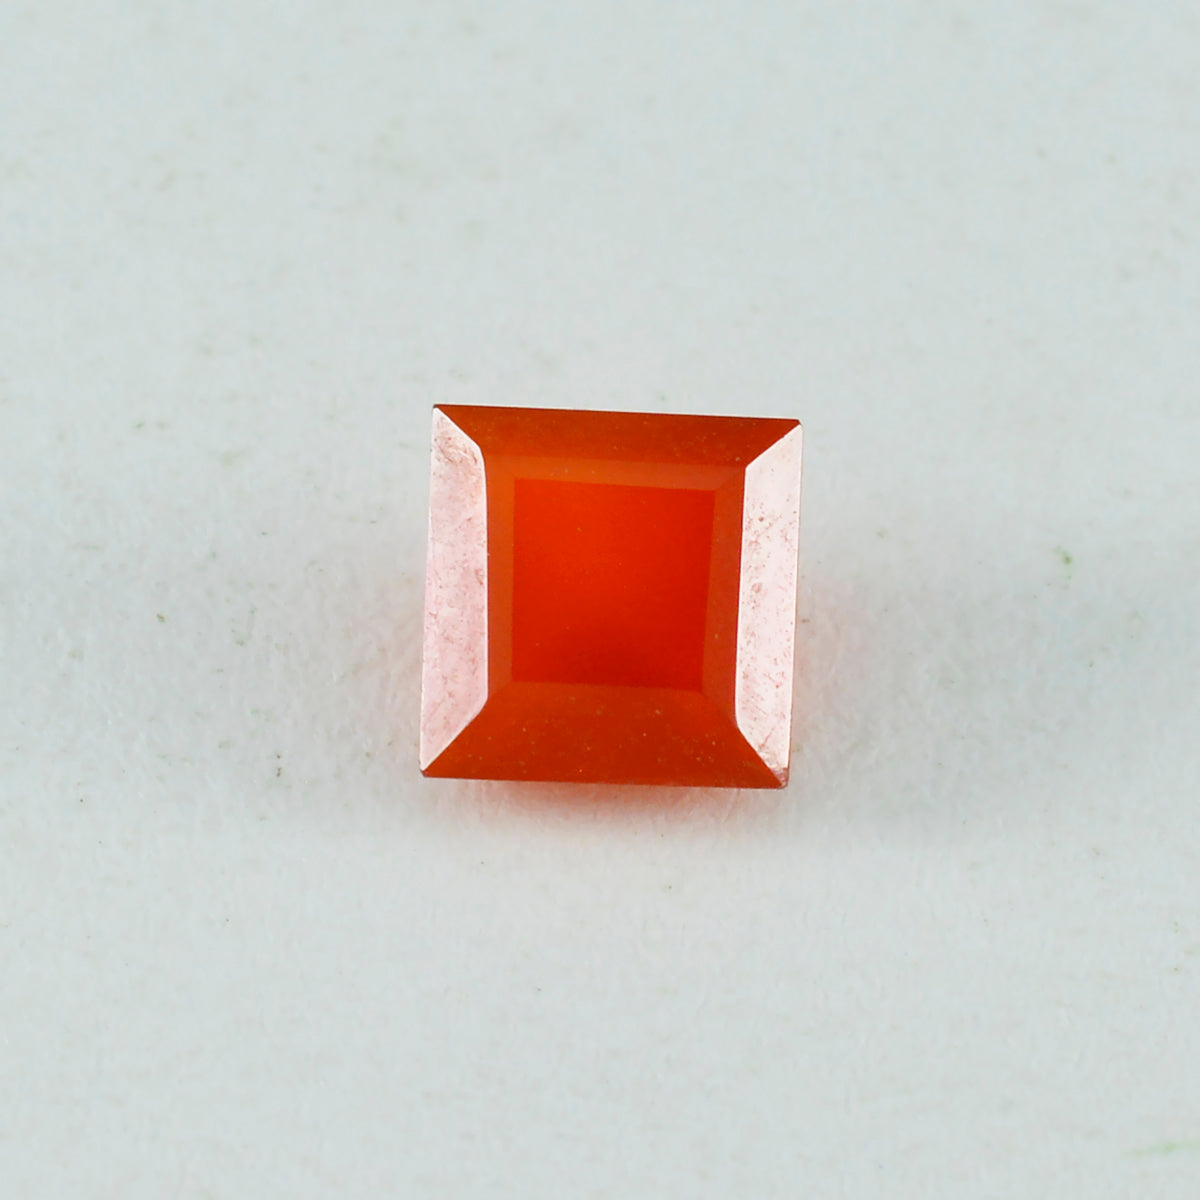 Riyogems 1PC echte rode onyx gefacetteerde 10x10 mm vierkante vorm knappe kwaliteit losse steen